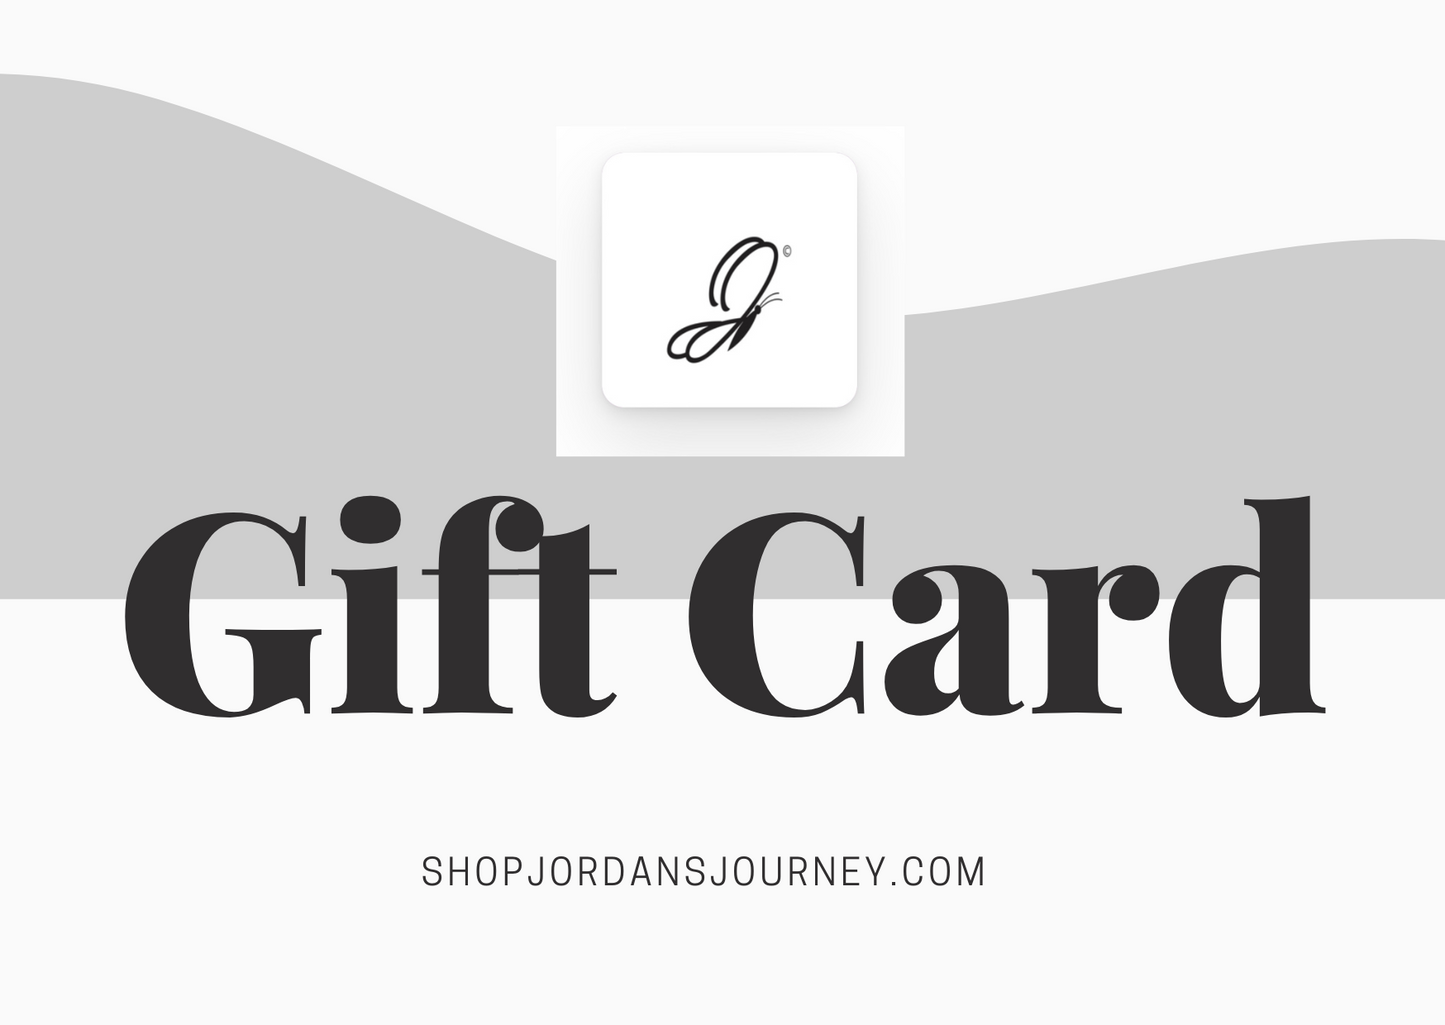 Jordan's Journey Gift Card